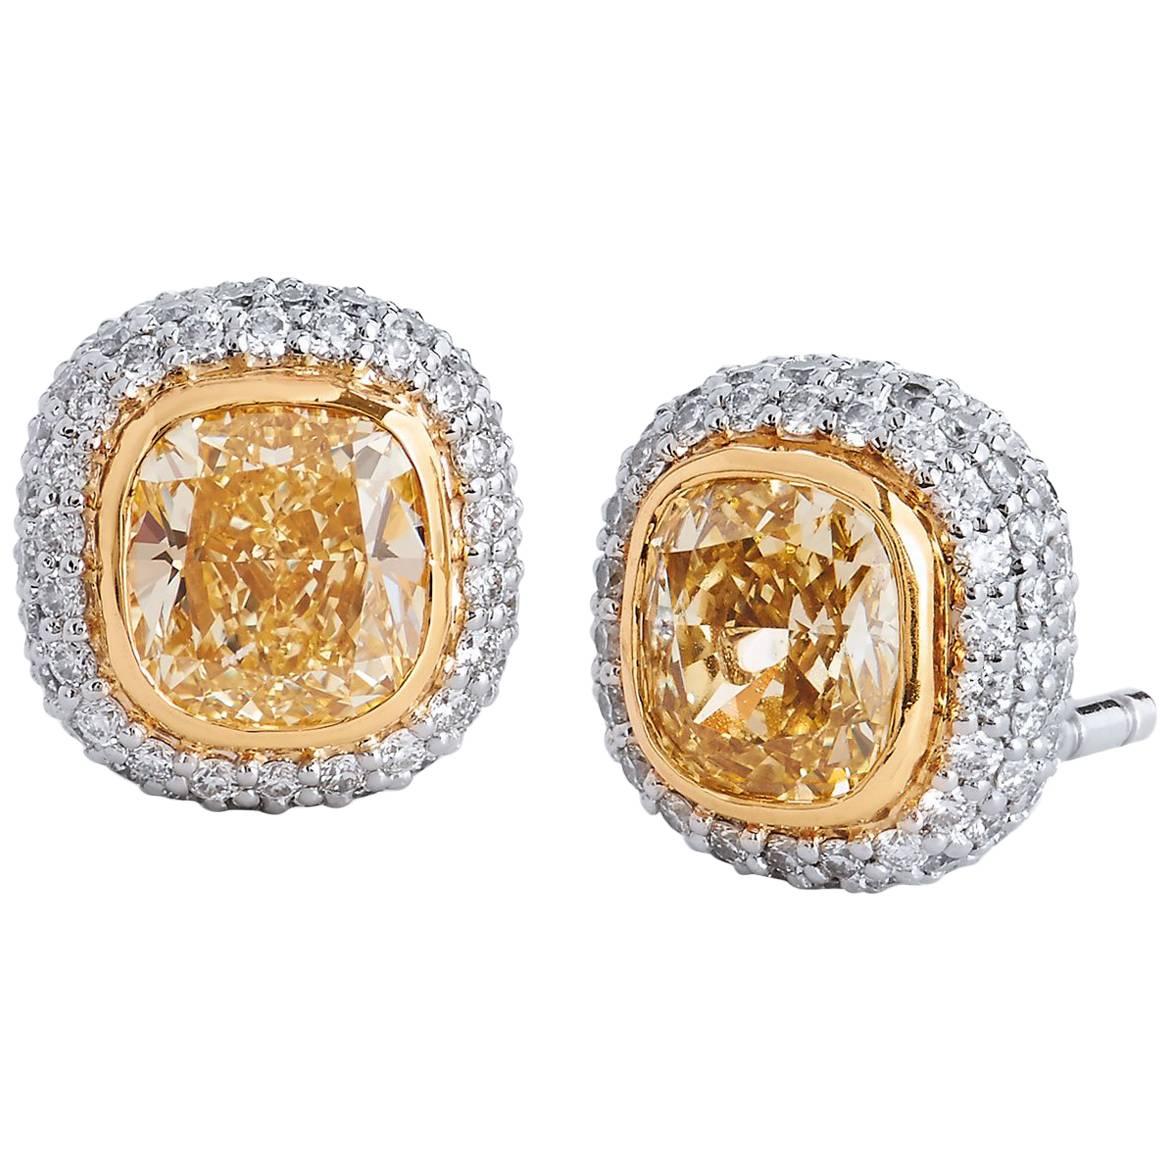 Tiffany & Co. 1.68 Carat Fancy Yellow Diamond Stud Earrings